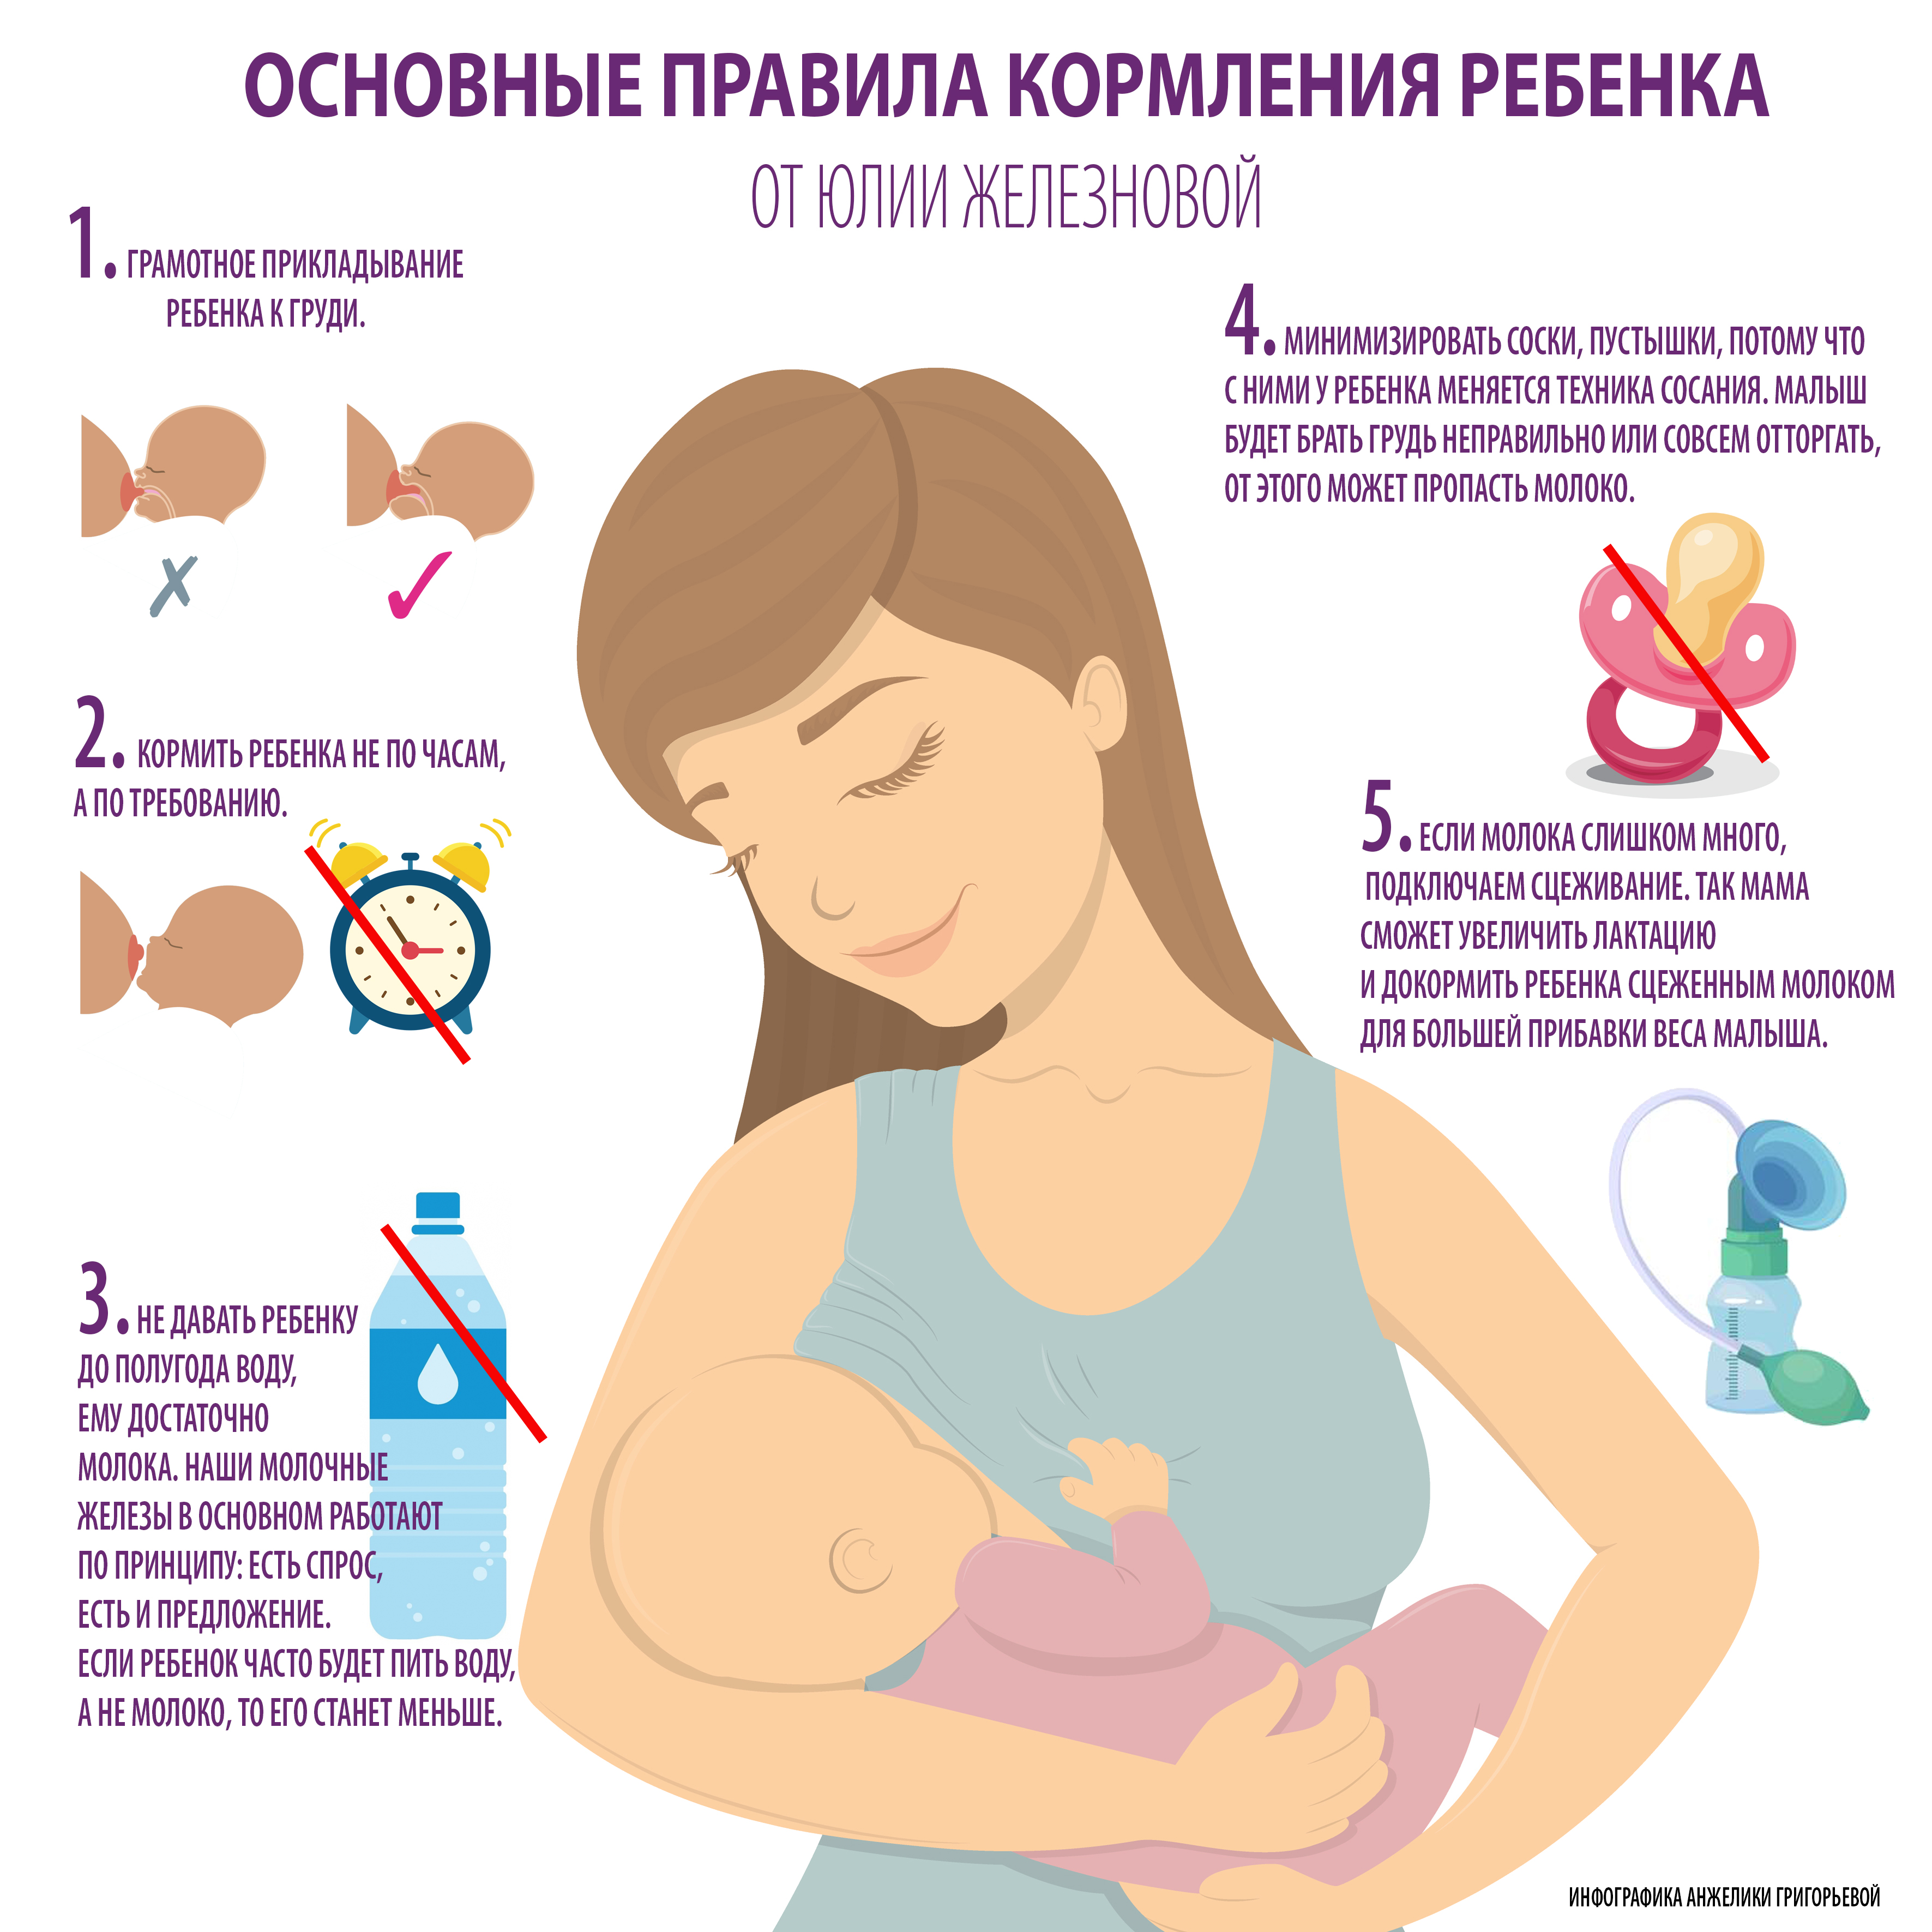 Изменение груди во время беременности: как меняется, причины | Philips Avent